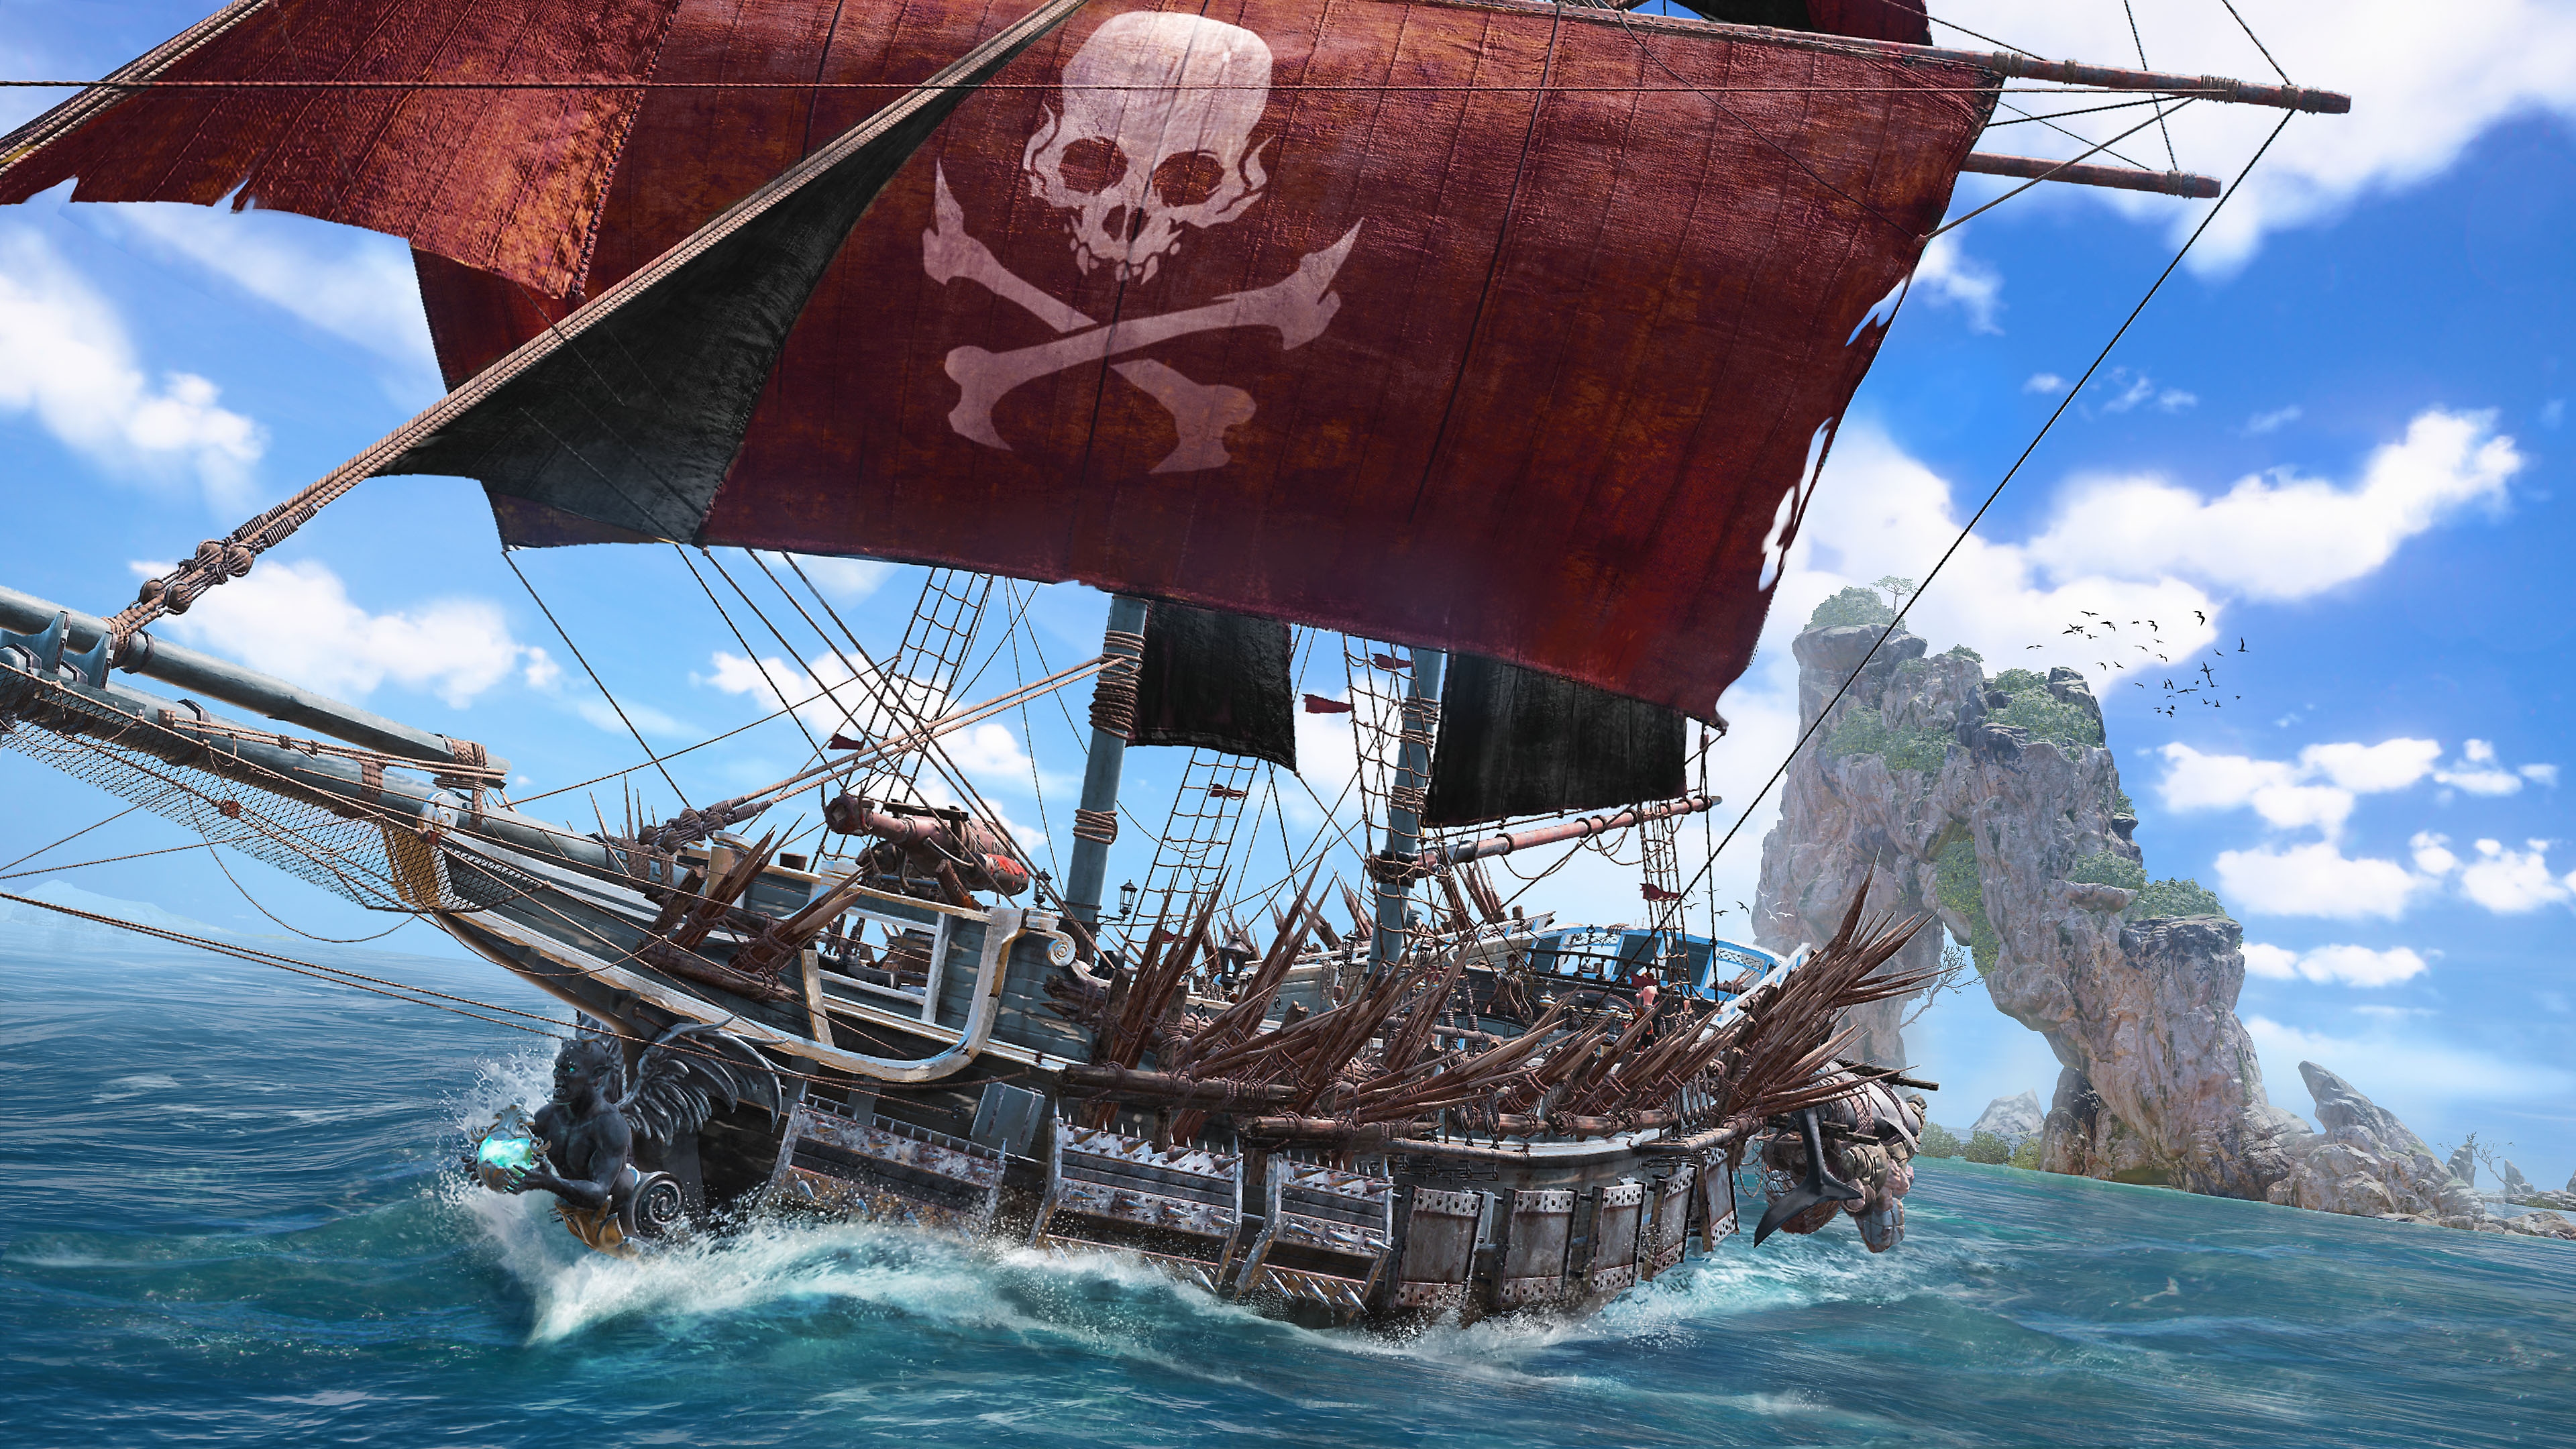 Skull and Bones - Capture d'écran montrant un bateau pirate avec une voile rouge arborant une tête de mort et deux os entrecroisés